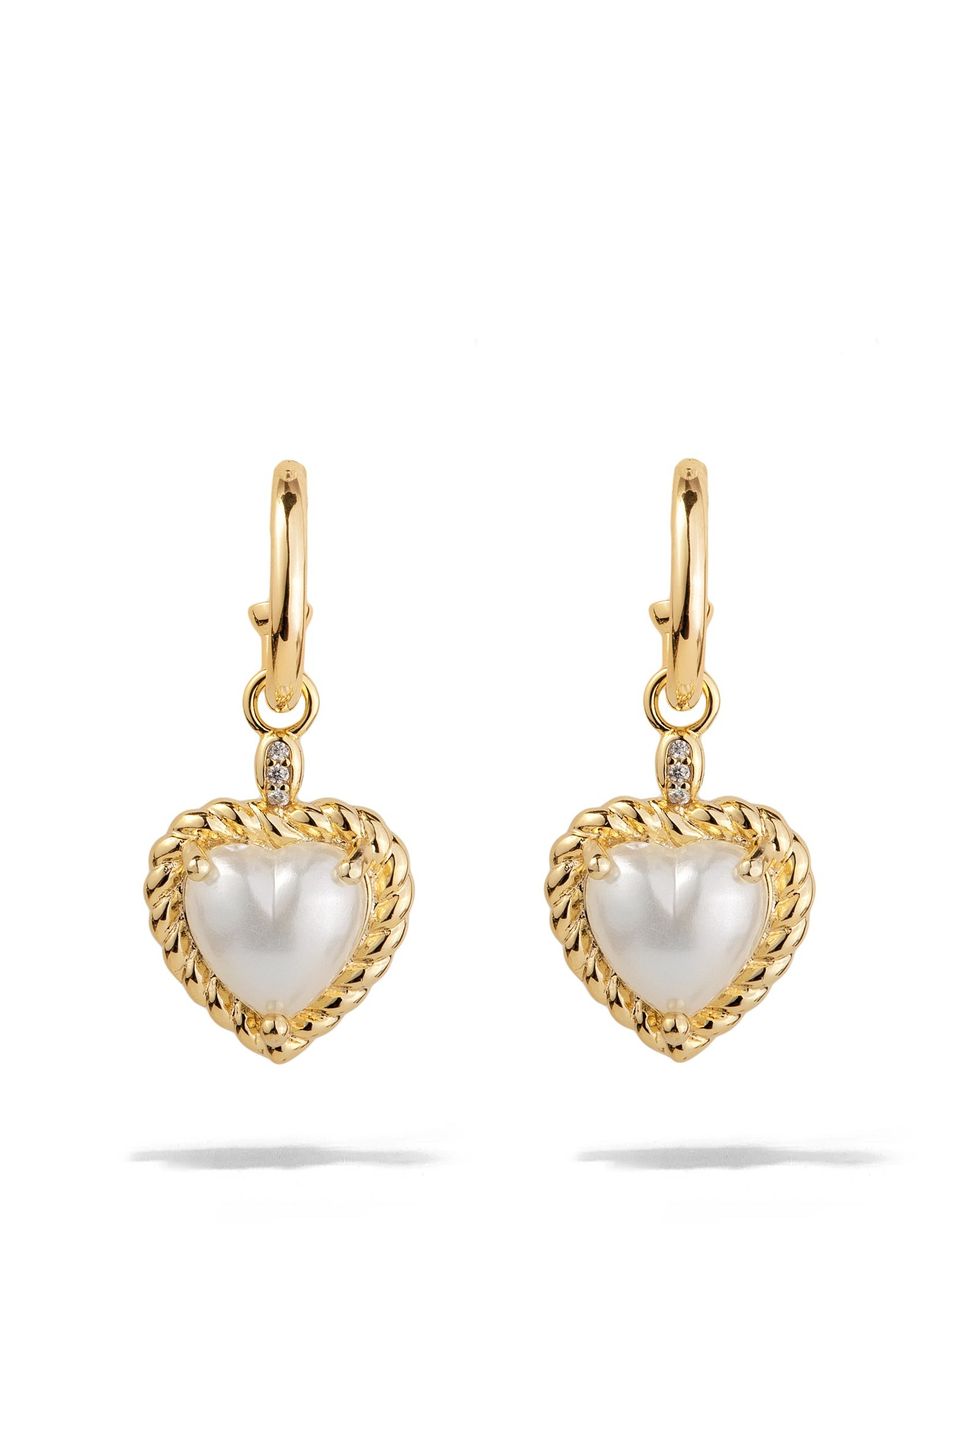 Oomiay Vintage Pearl Heart Earrings